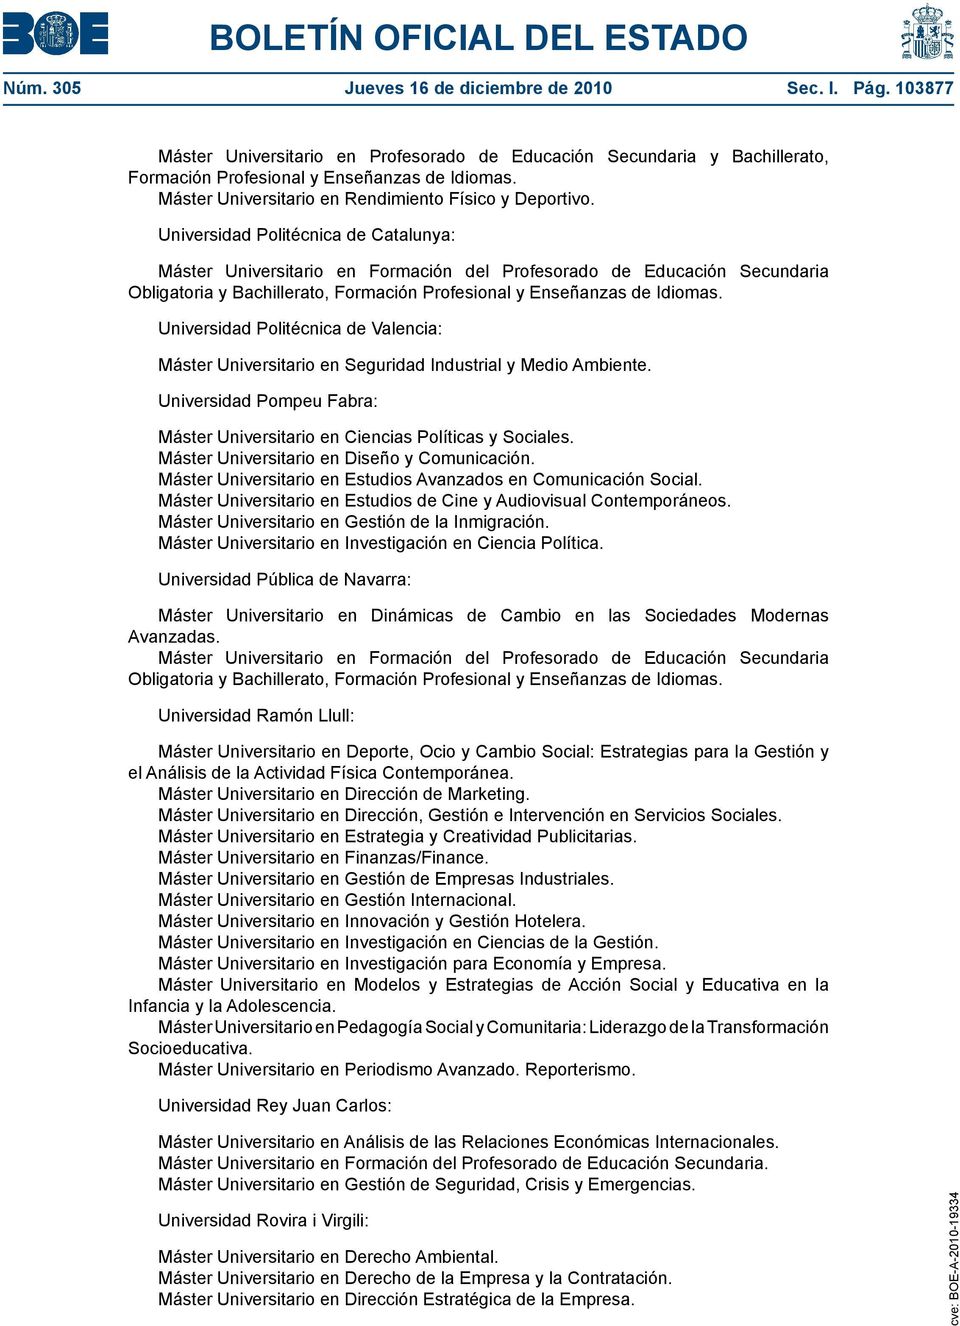 Universidad Politécnica de Catalunya: Máster Universitario en Formación del Profesorado de Educación Secundaria Obligatoria y Bachillerato, Formación Profesional y Enseñanzas de Idiomas.